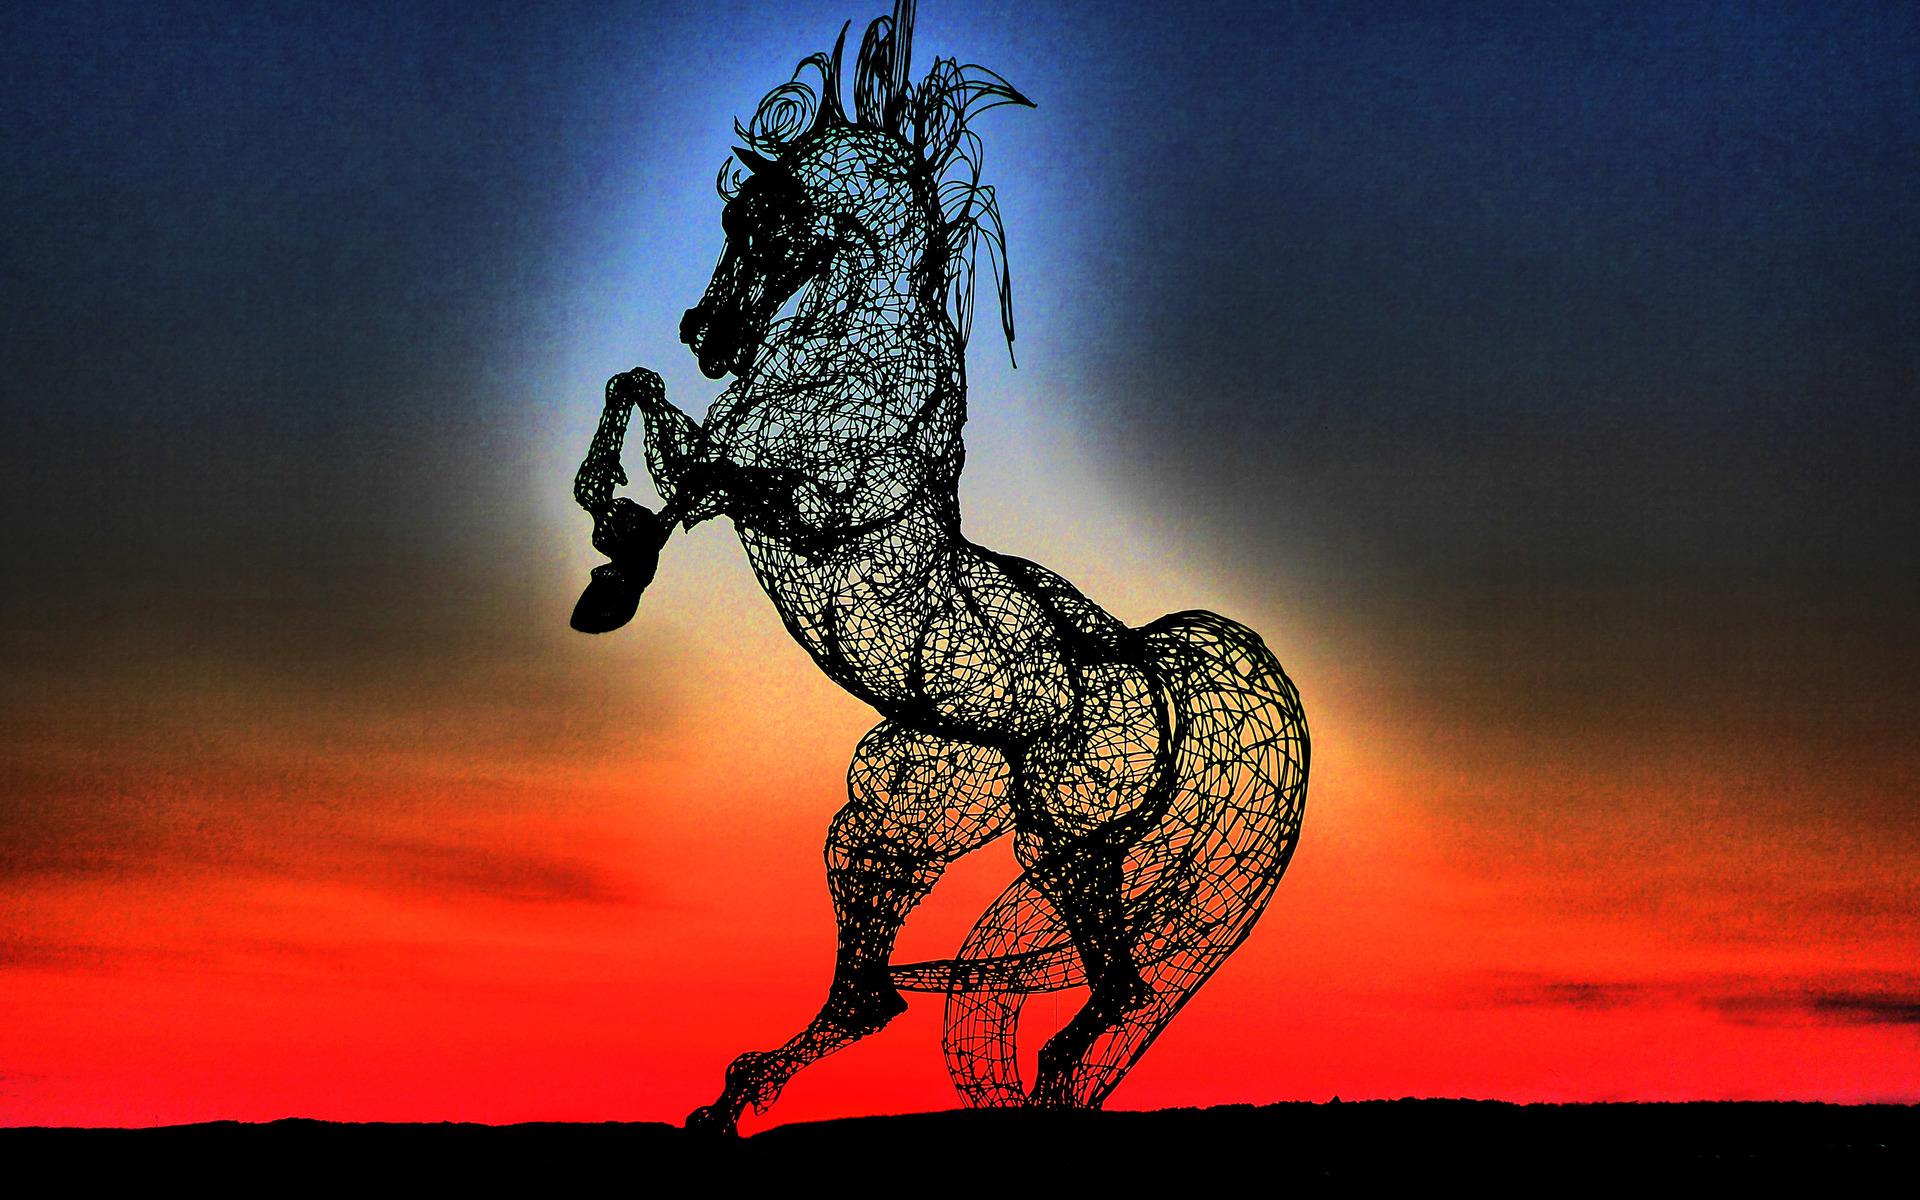 ”Solnedgång. Det är många som fotar hästen. Jag tycker att min bild sticker ut, med dom fina färgerna.Blir själv glad när jag ser Syrian Horse.”